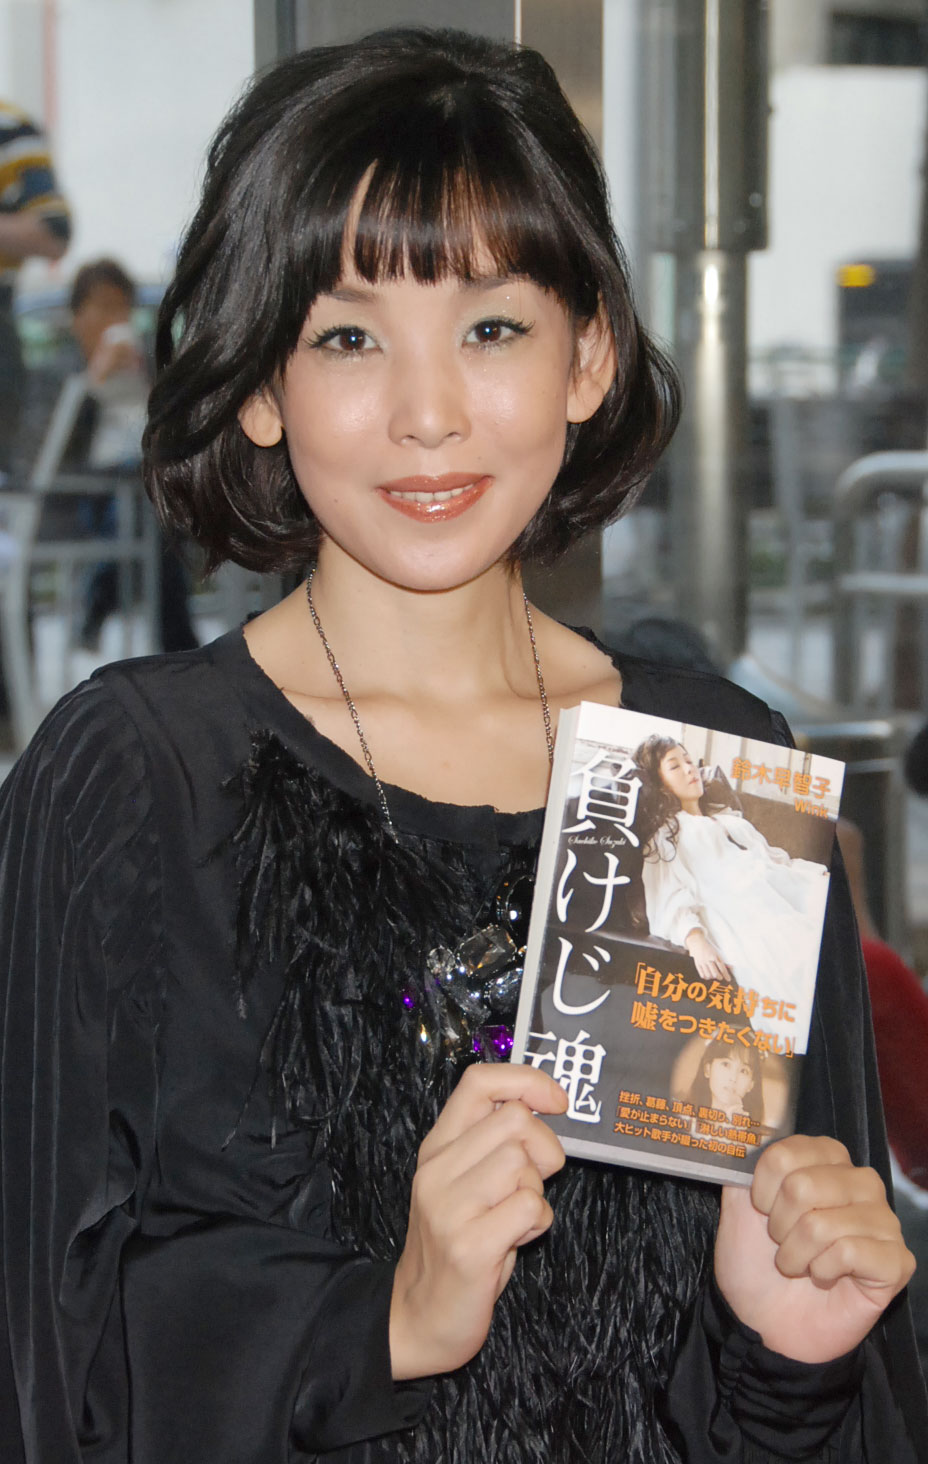 画像 写真 鈴木早智子が活動再開 不倫関係否定し今後は 歌を軸に 1枚目 Oricon News